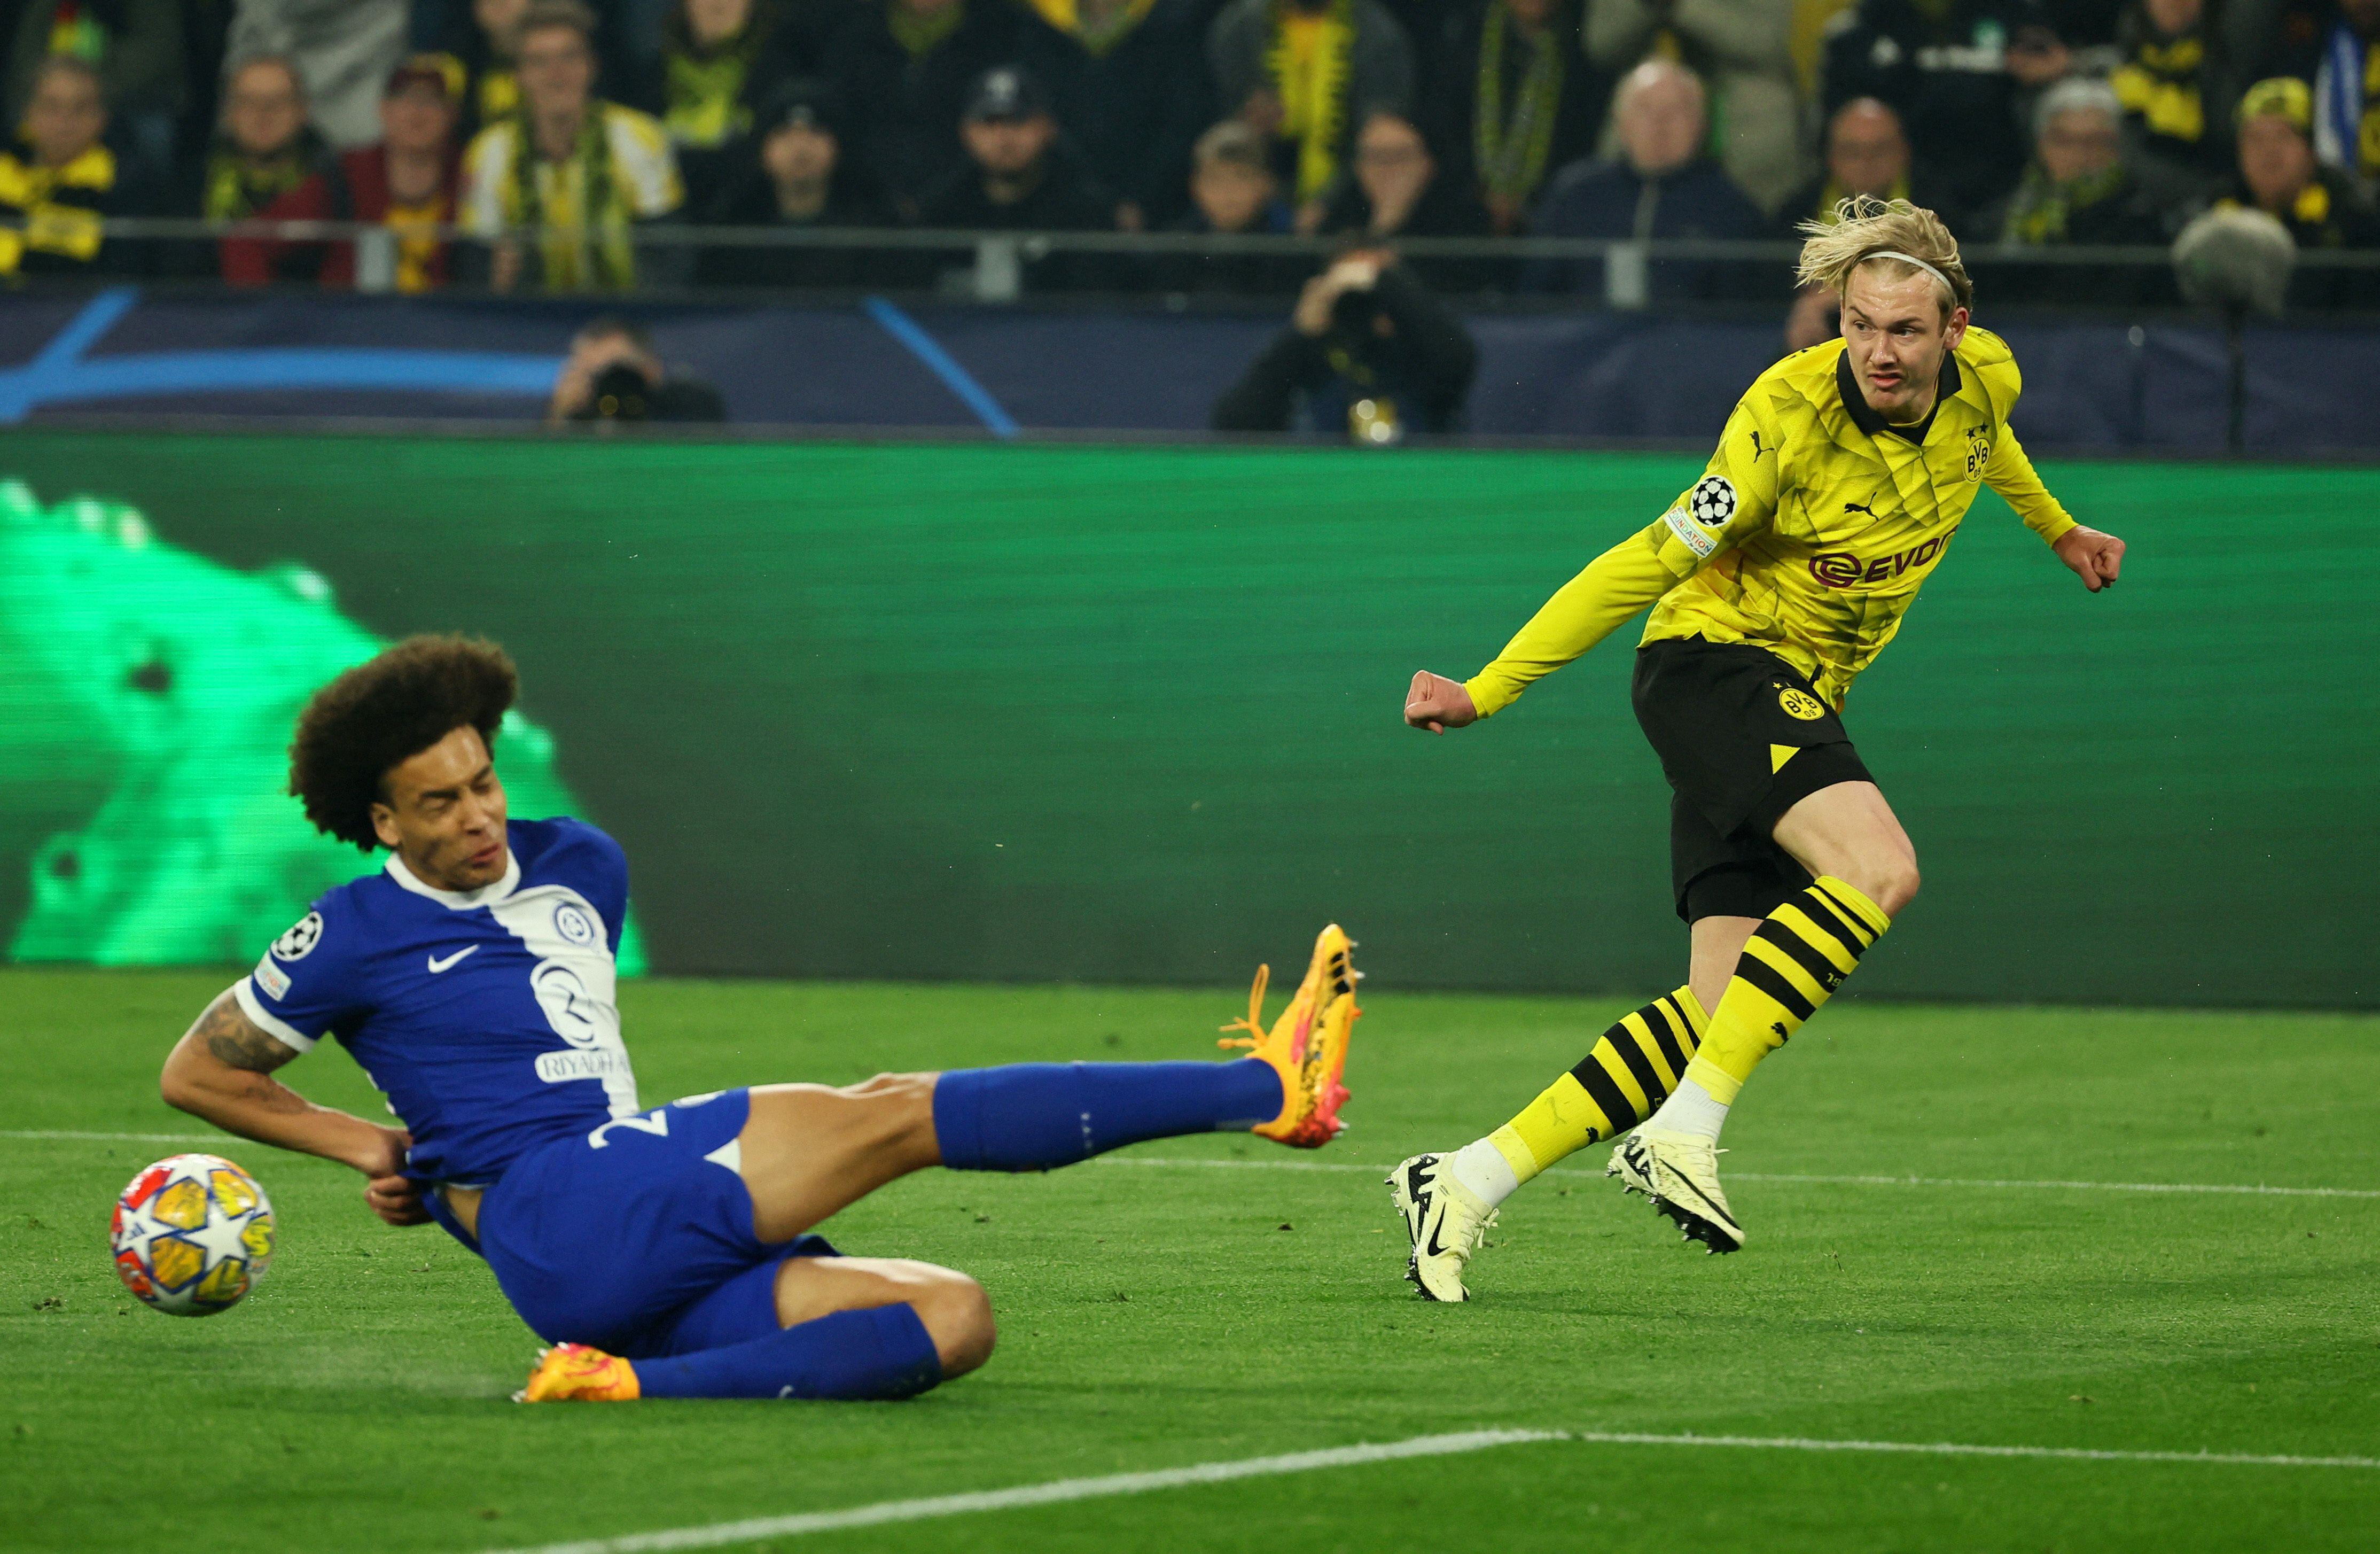 Dortmund – Atlético, la Champions League en directo | Ambos equipos se reparten las ocasiones de gol en los primeros minutos